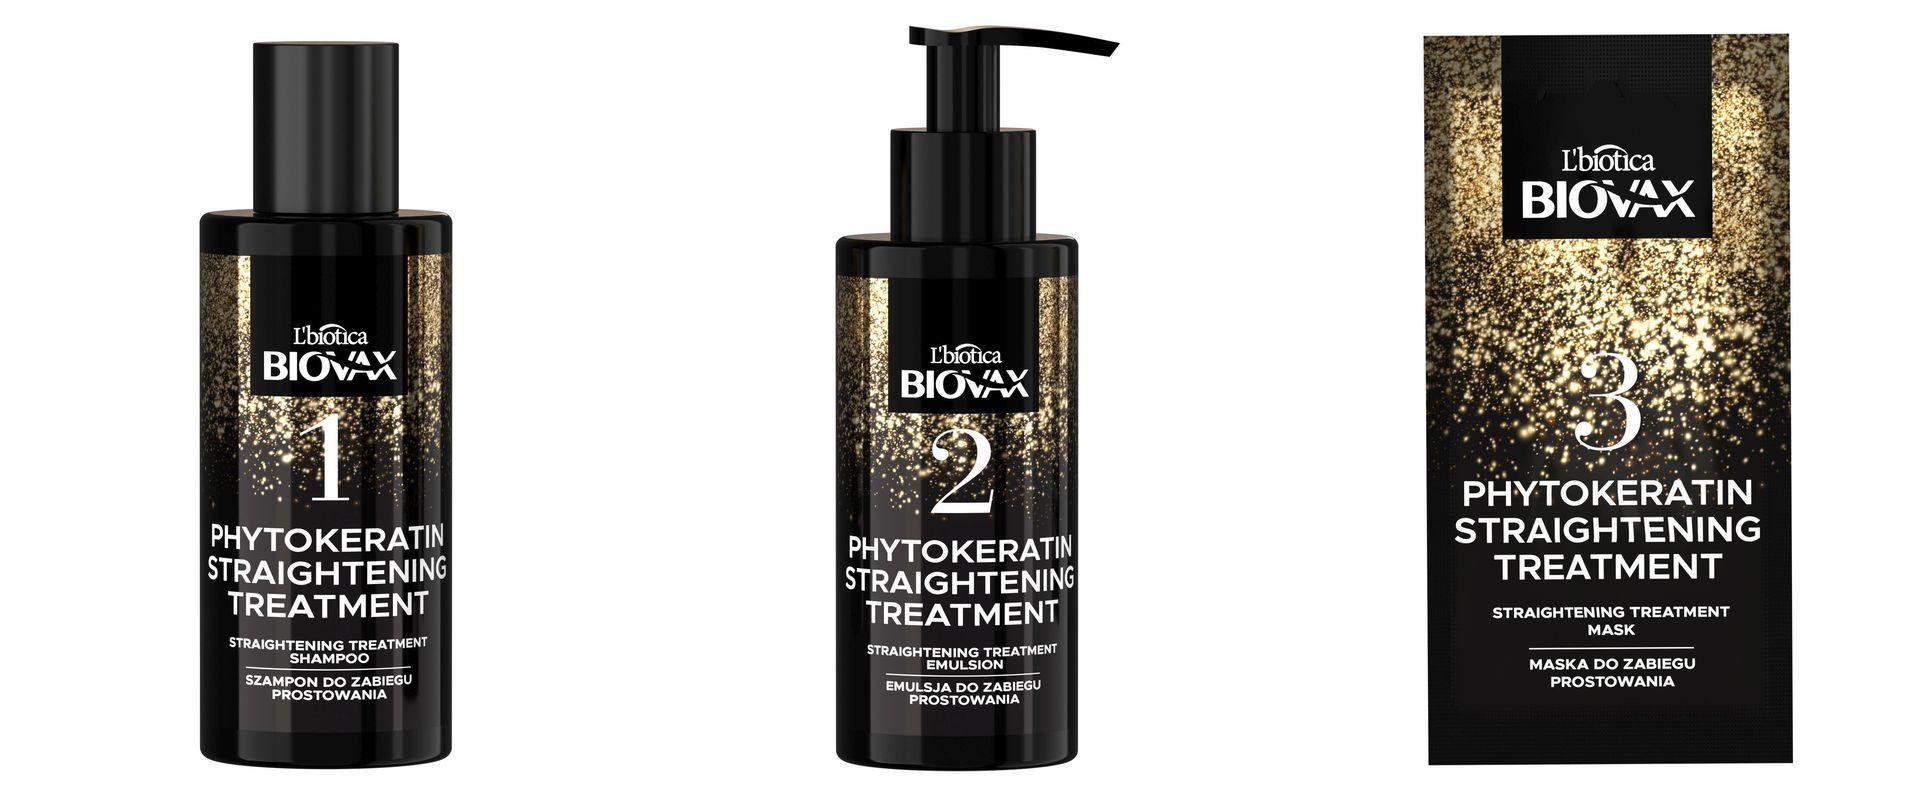 Biovax - zestaw do keratynowego prostowania włosów